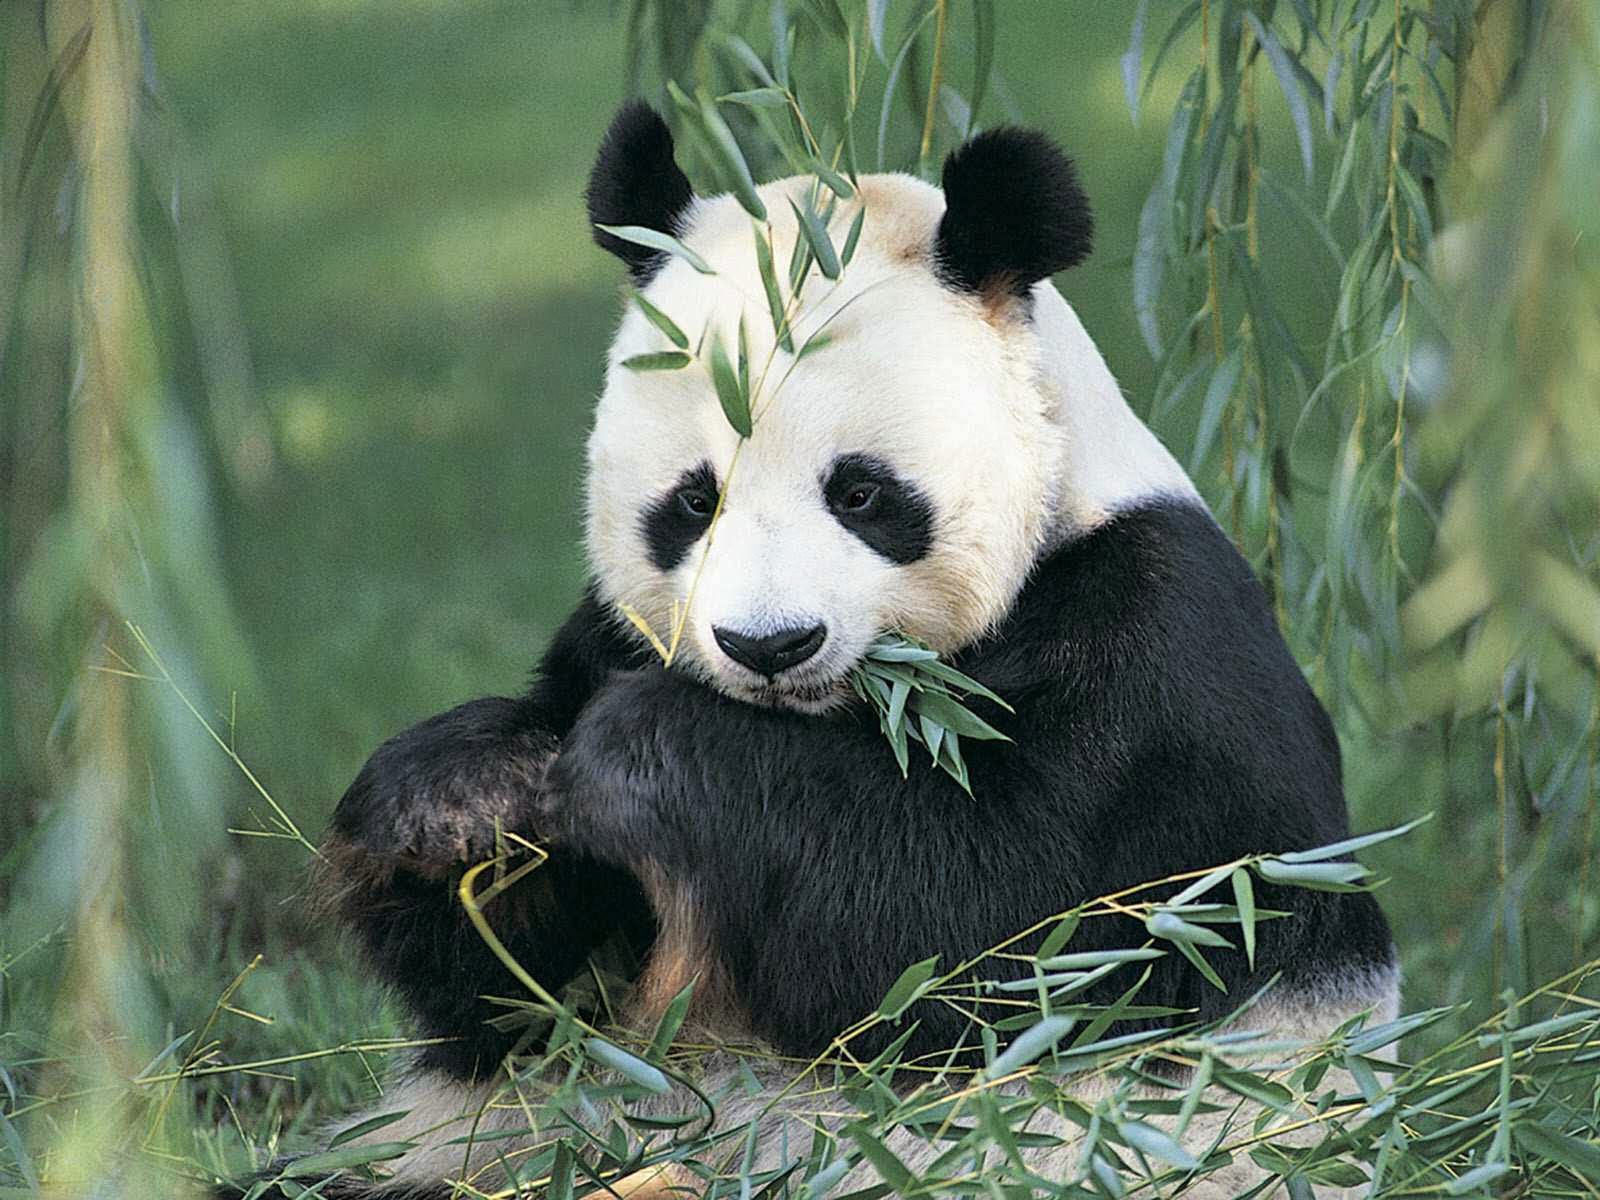 Gambar Panda Lucu Serta Asal Usul Panda Ayeeycom